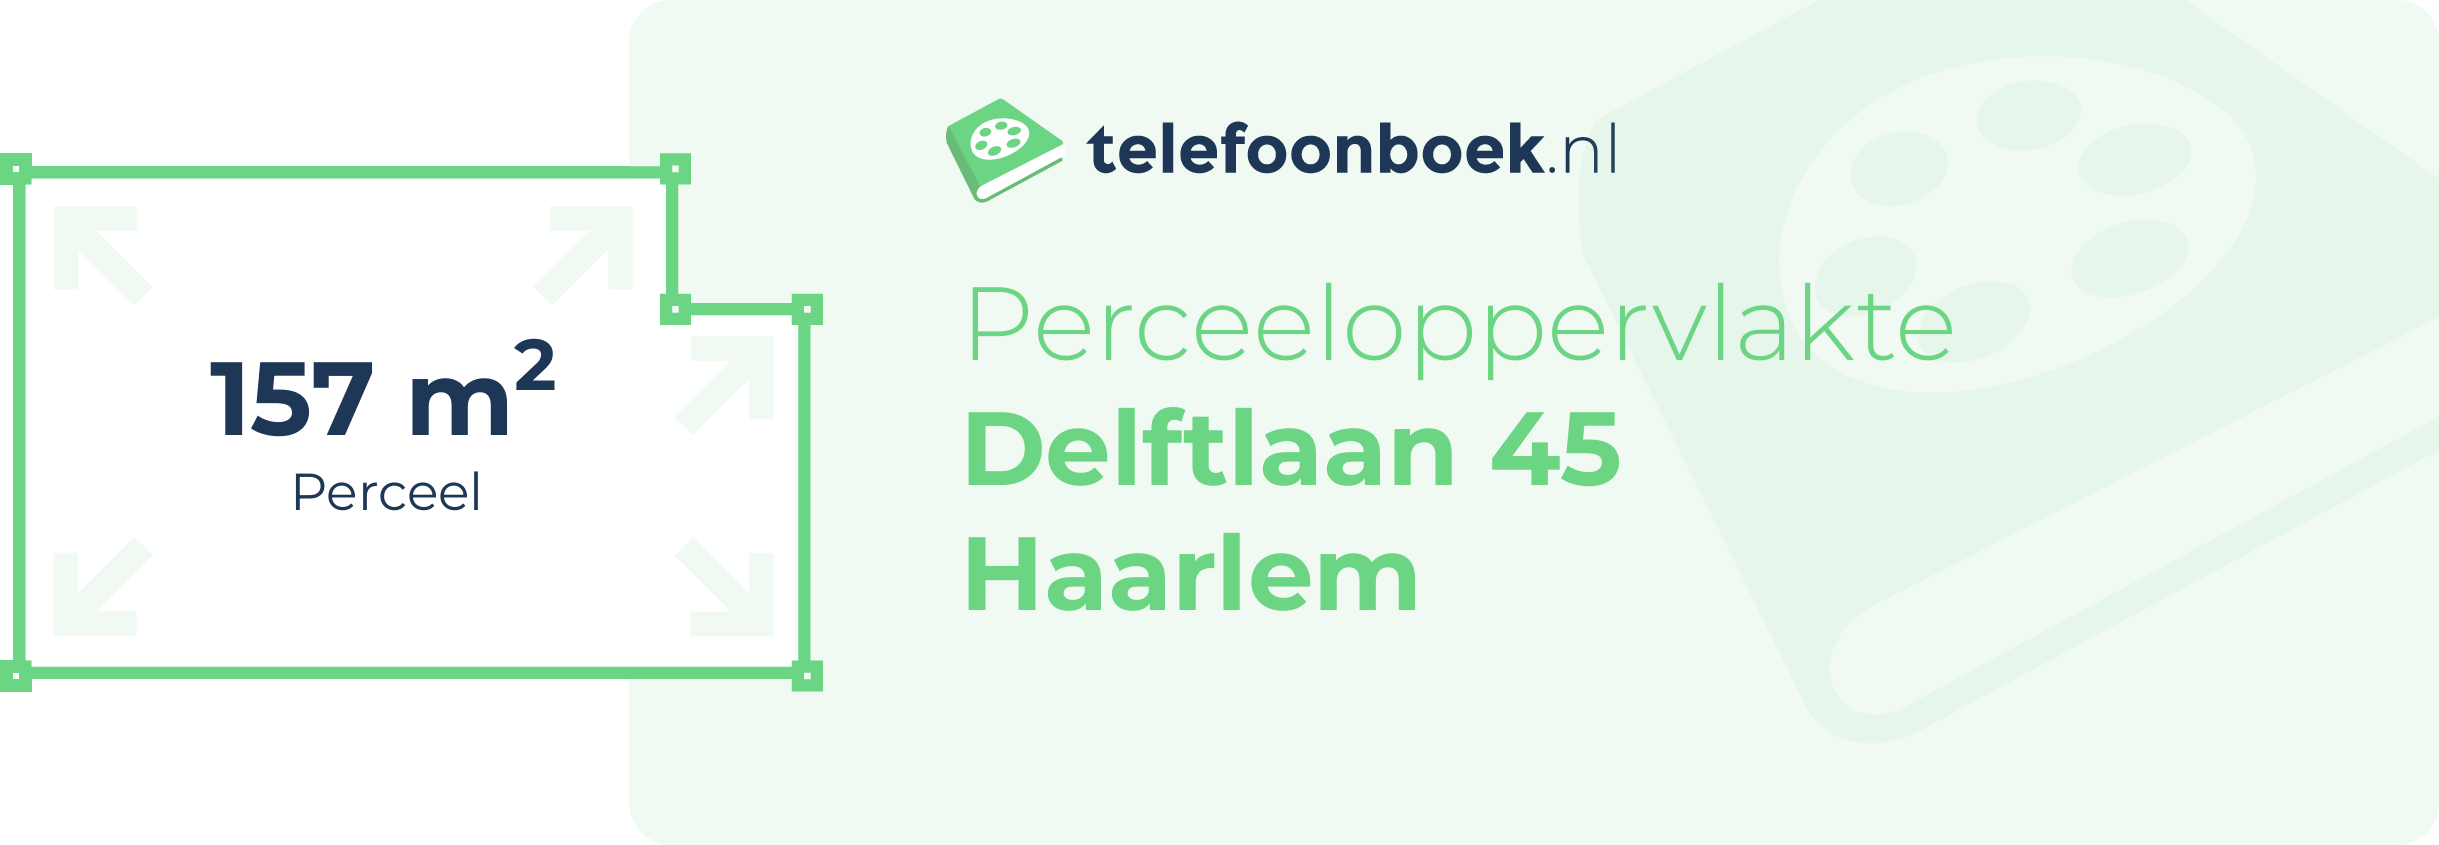 Perceeloppervlakte Delftlaan 45 Haarlem